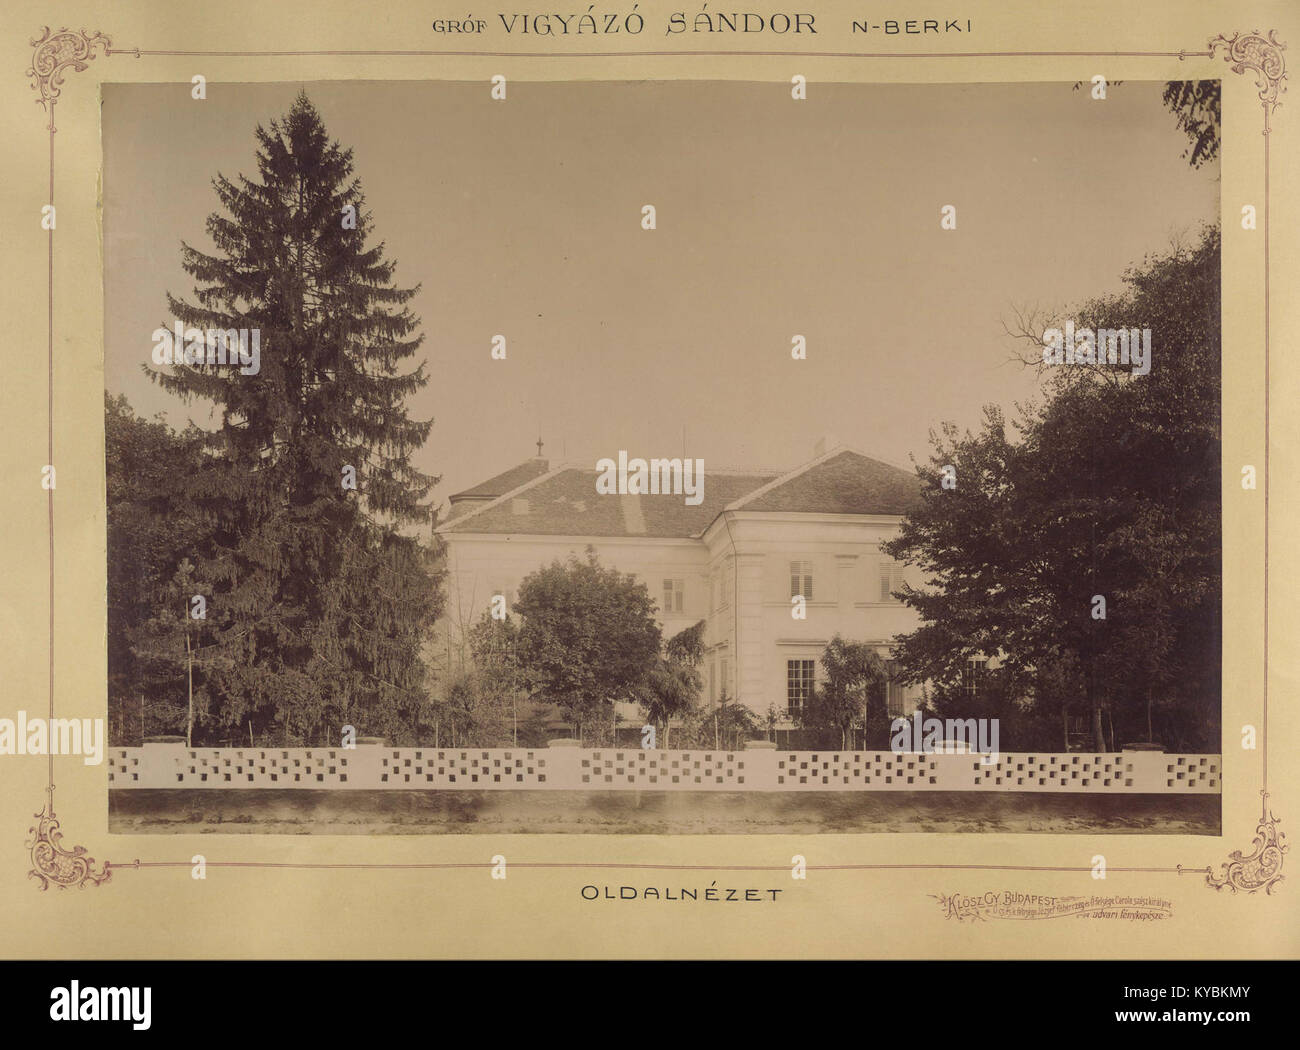 Nagyberki, Somogy Megye. Vigyázó - kastély, oldalnézet, 1895-1899 - Fortepan 83428 között. Stockfoto